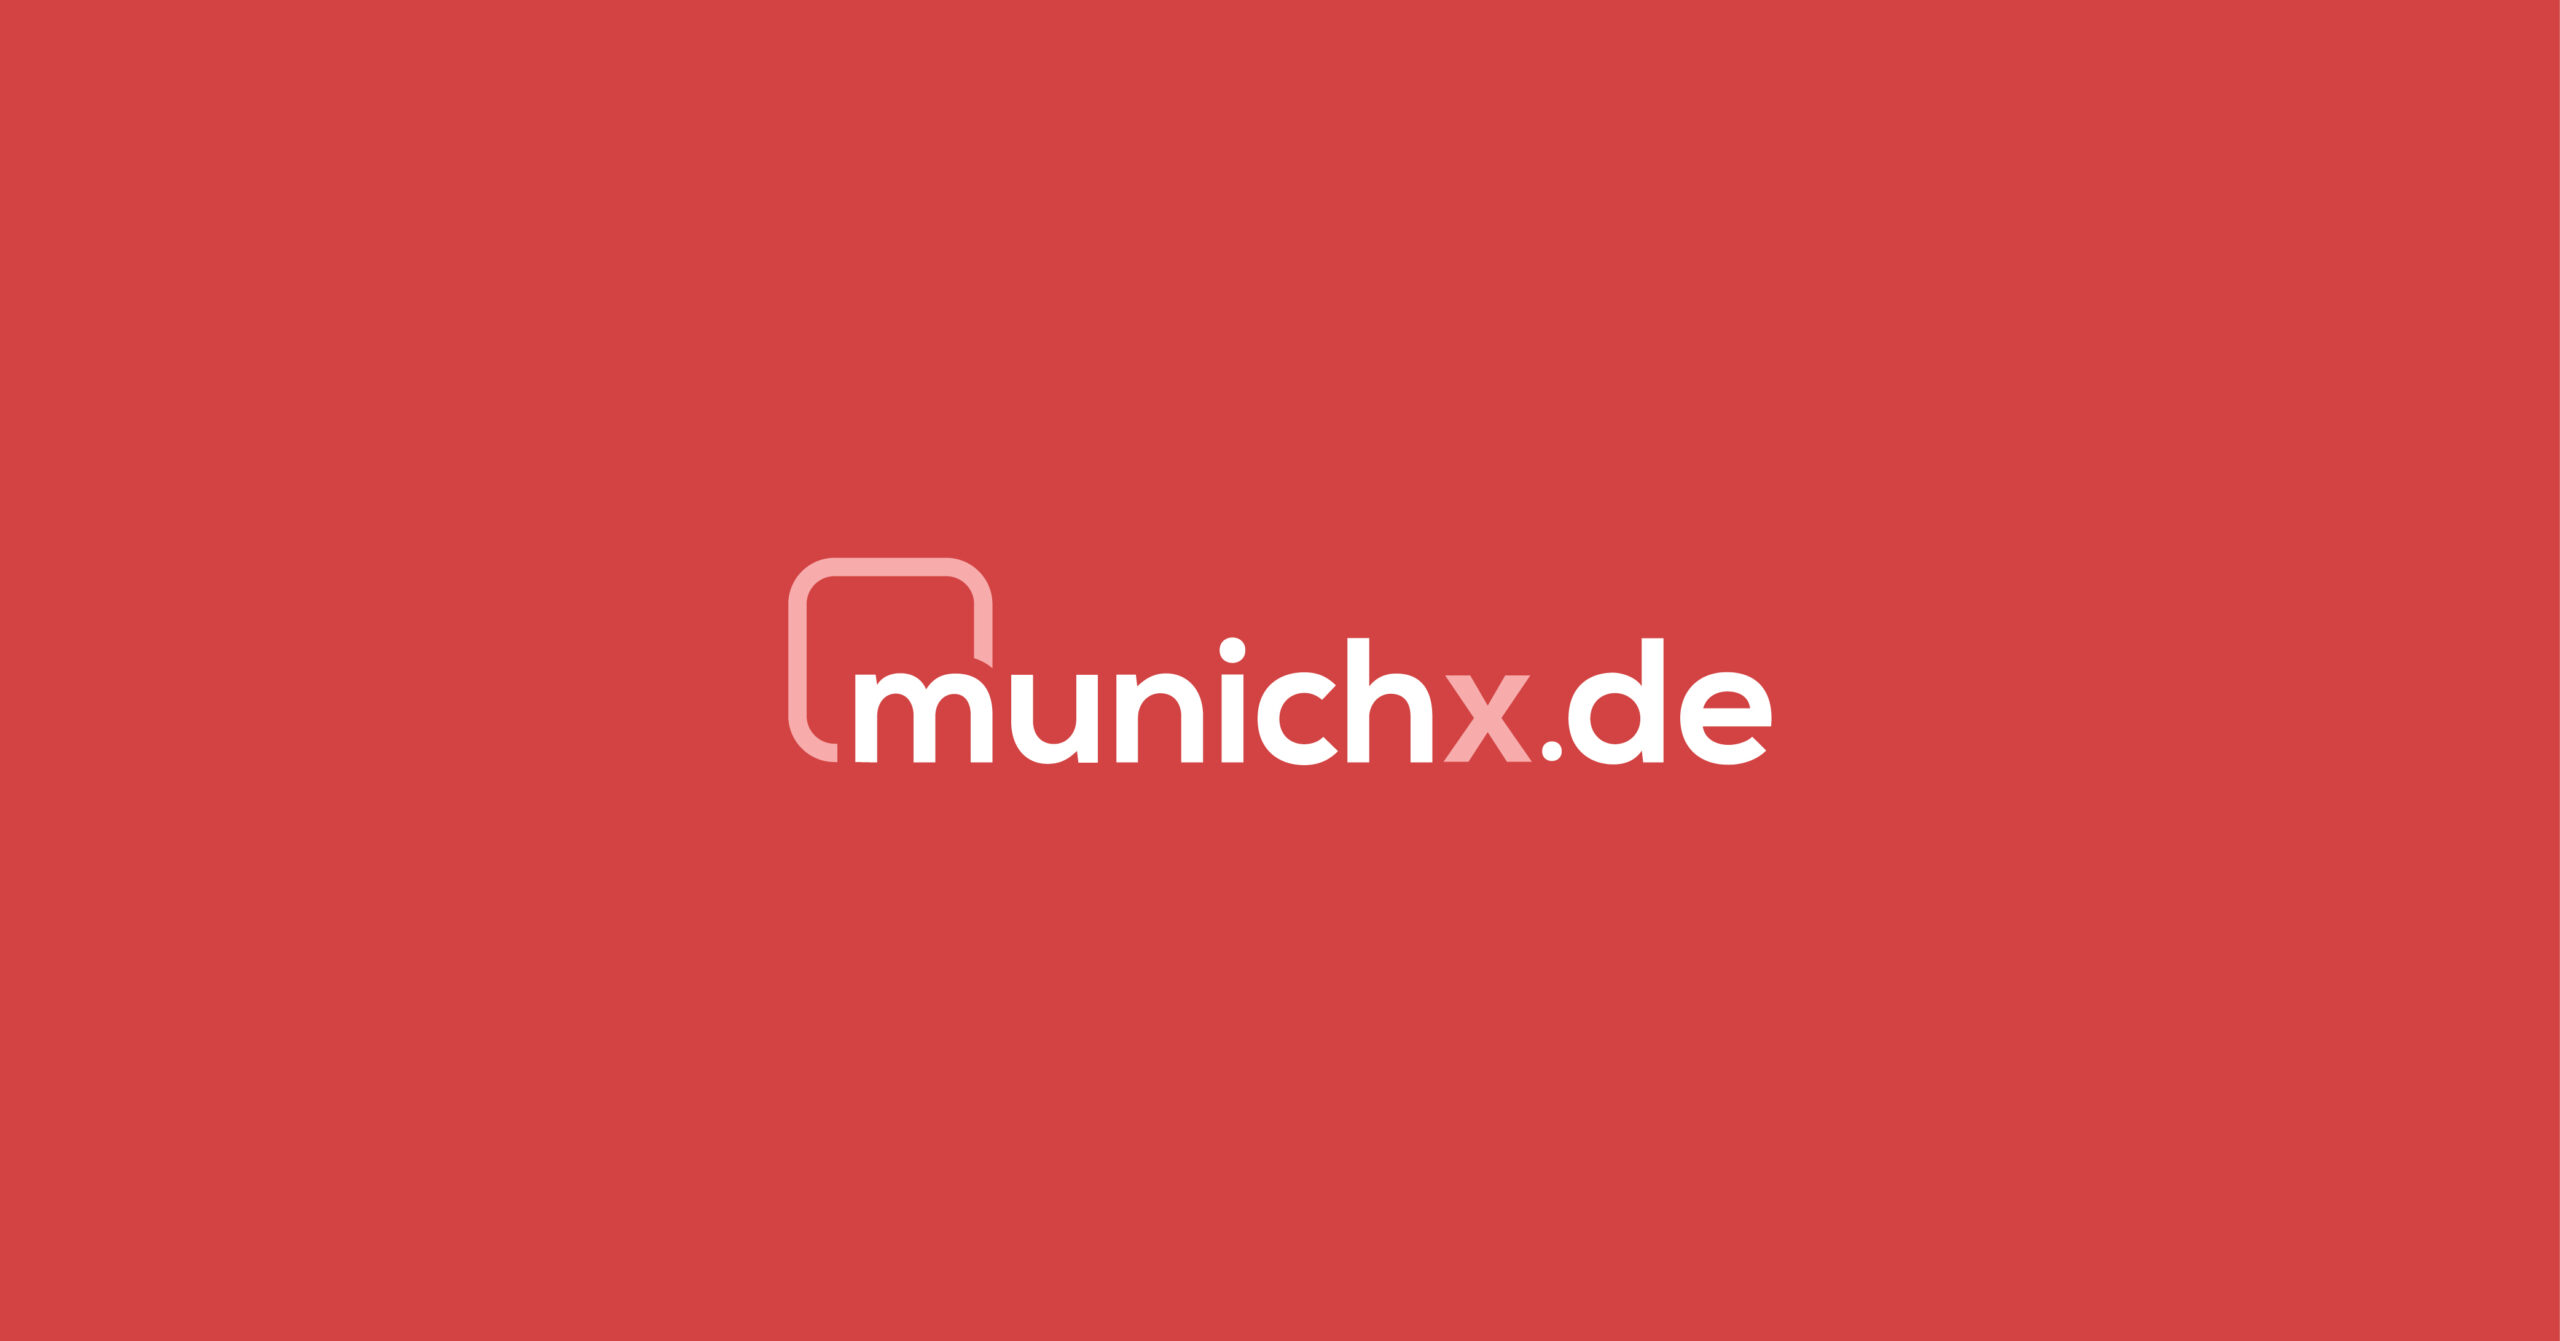 (c) Munichx.de